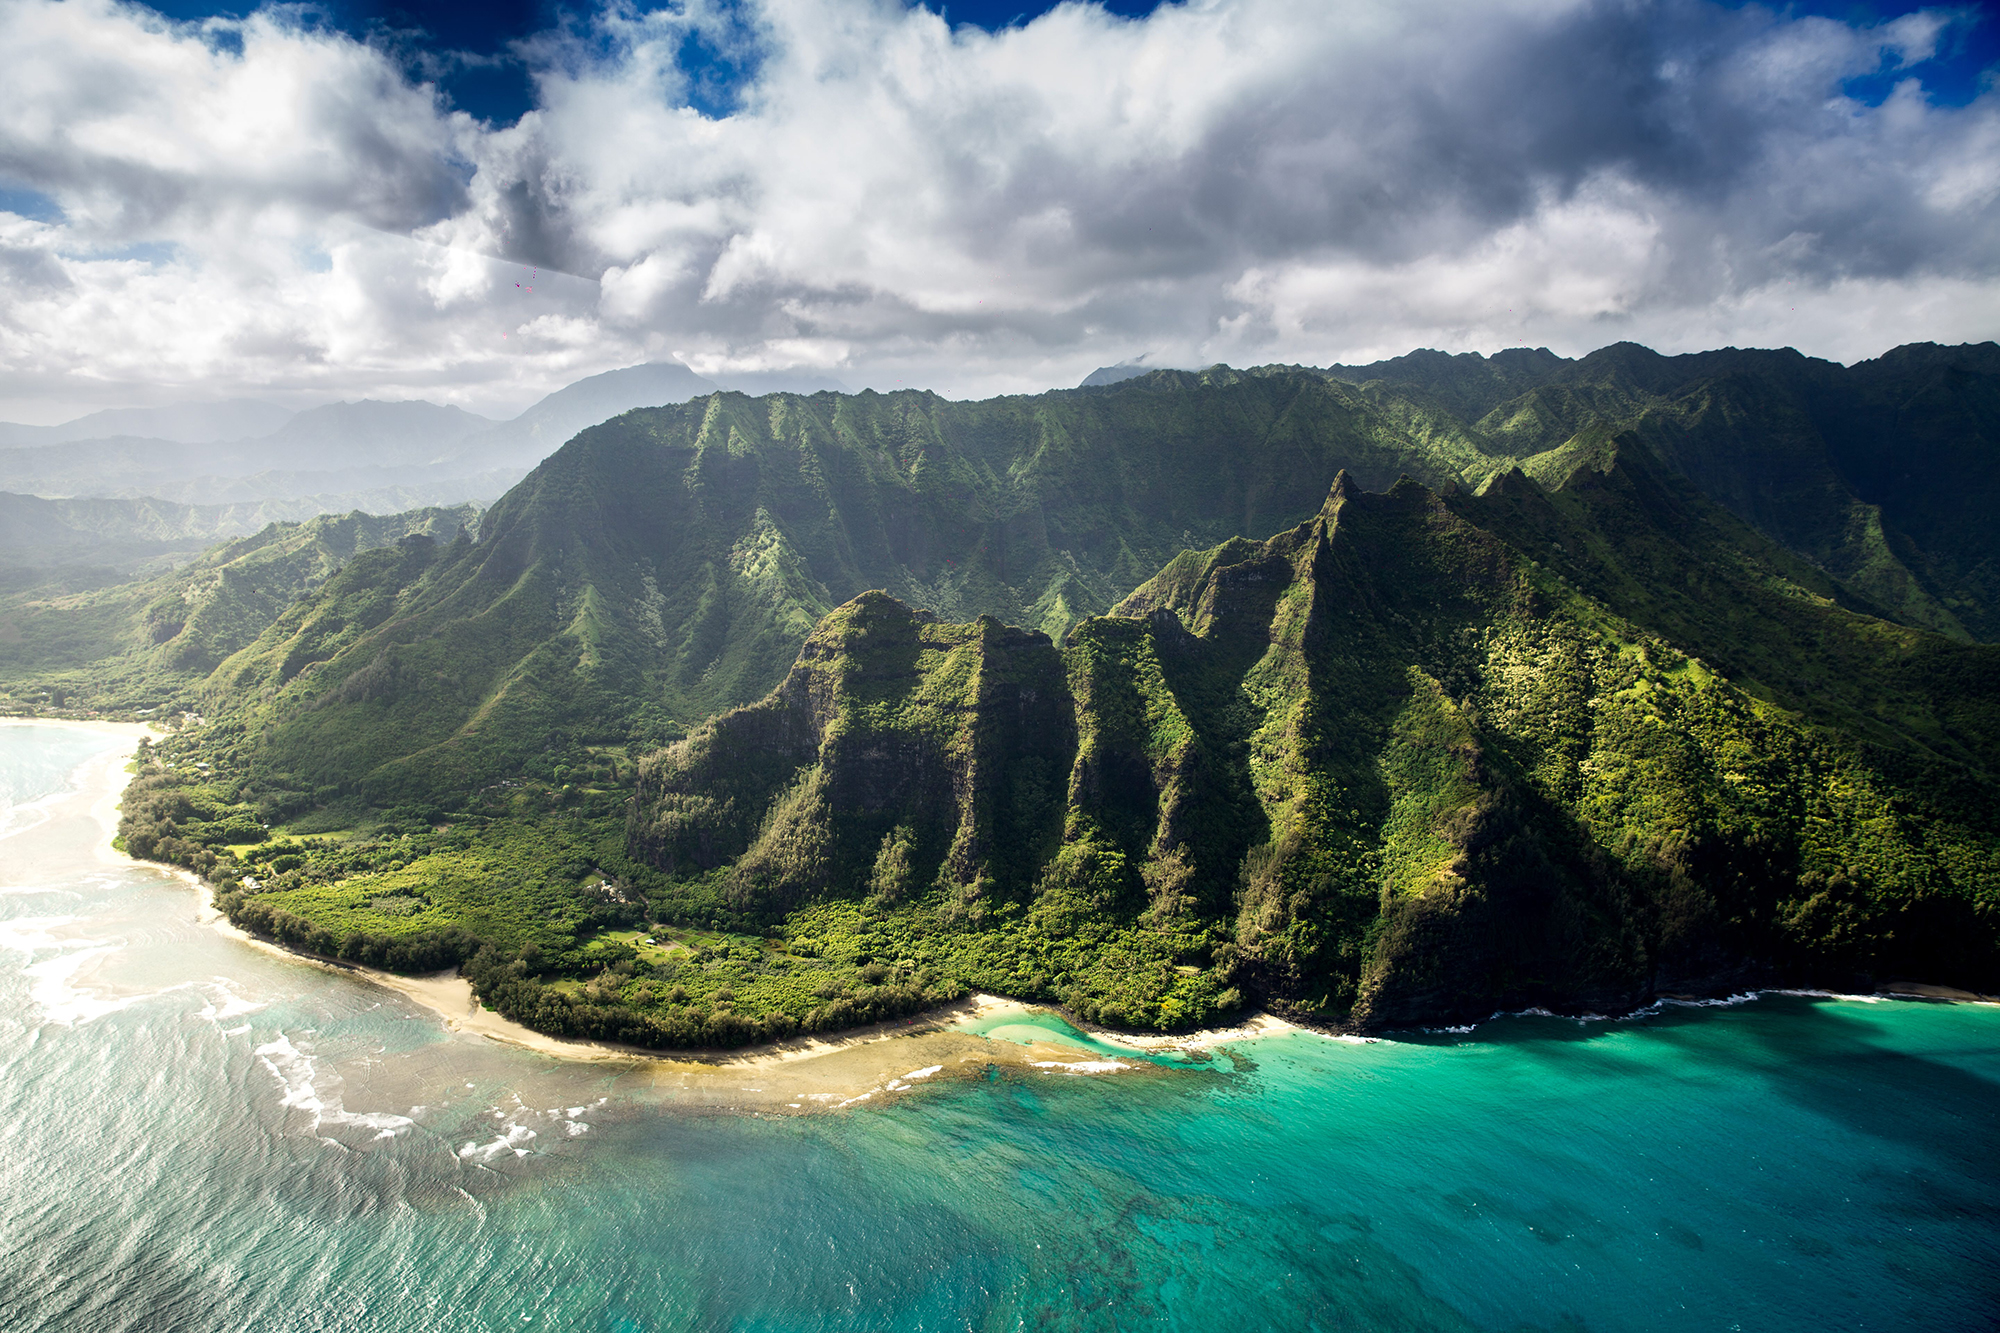 Jurassic Park - Kauai, Hawaii